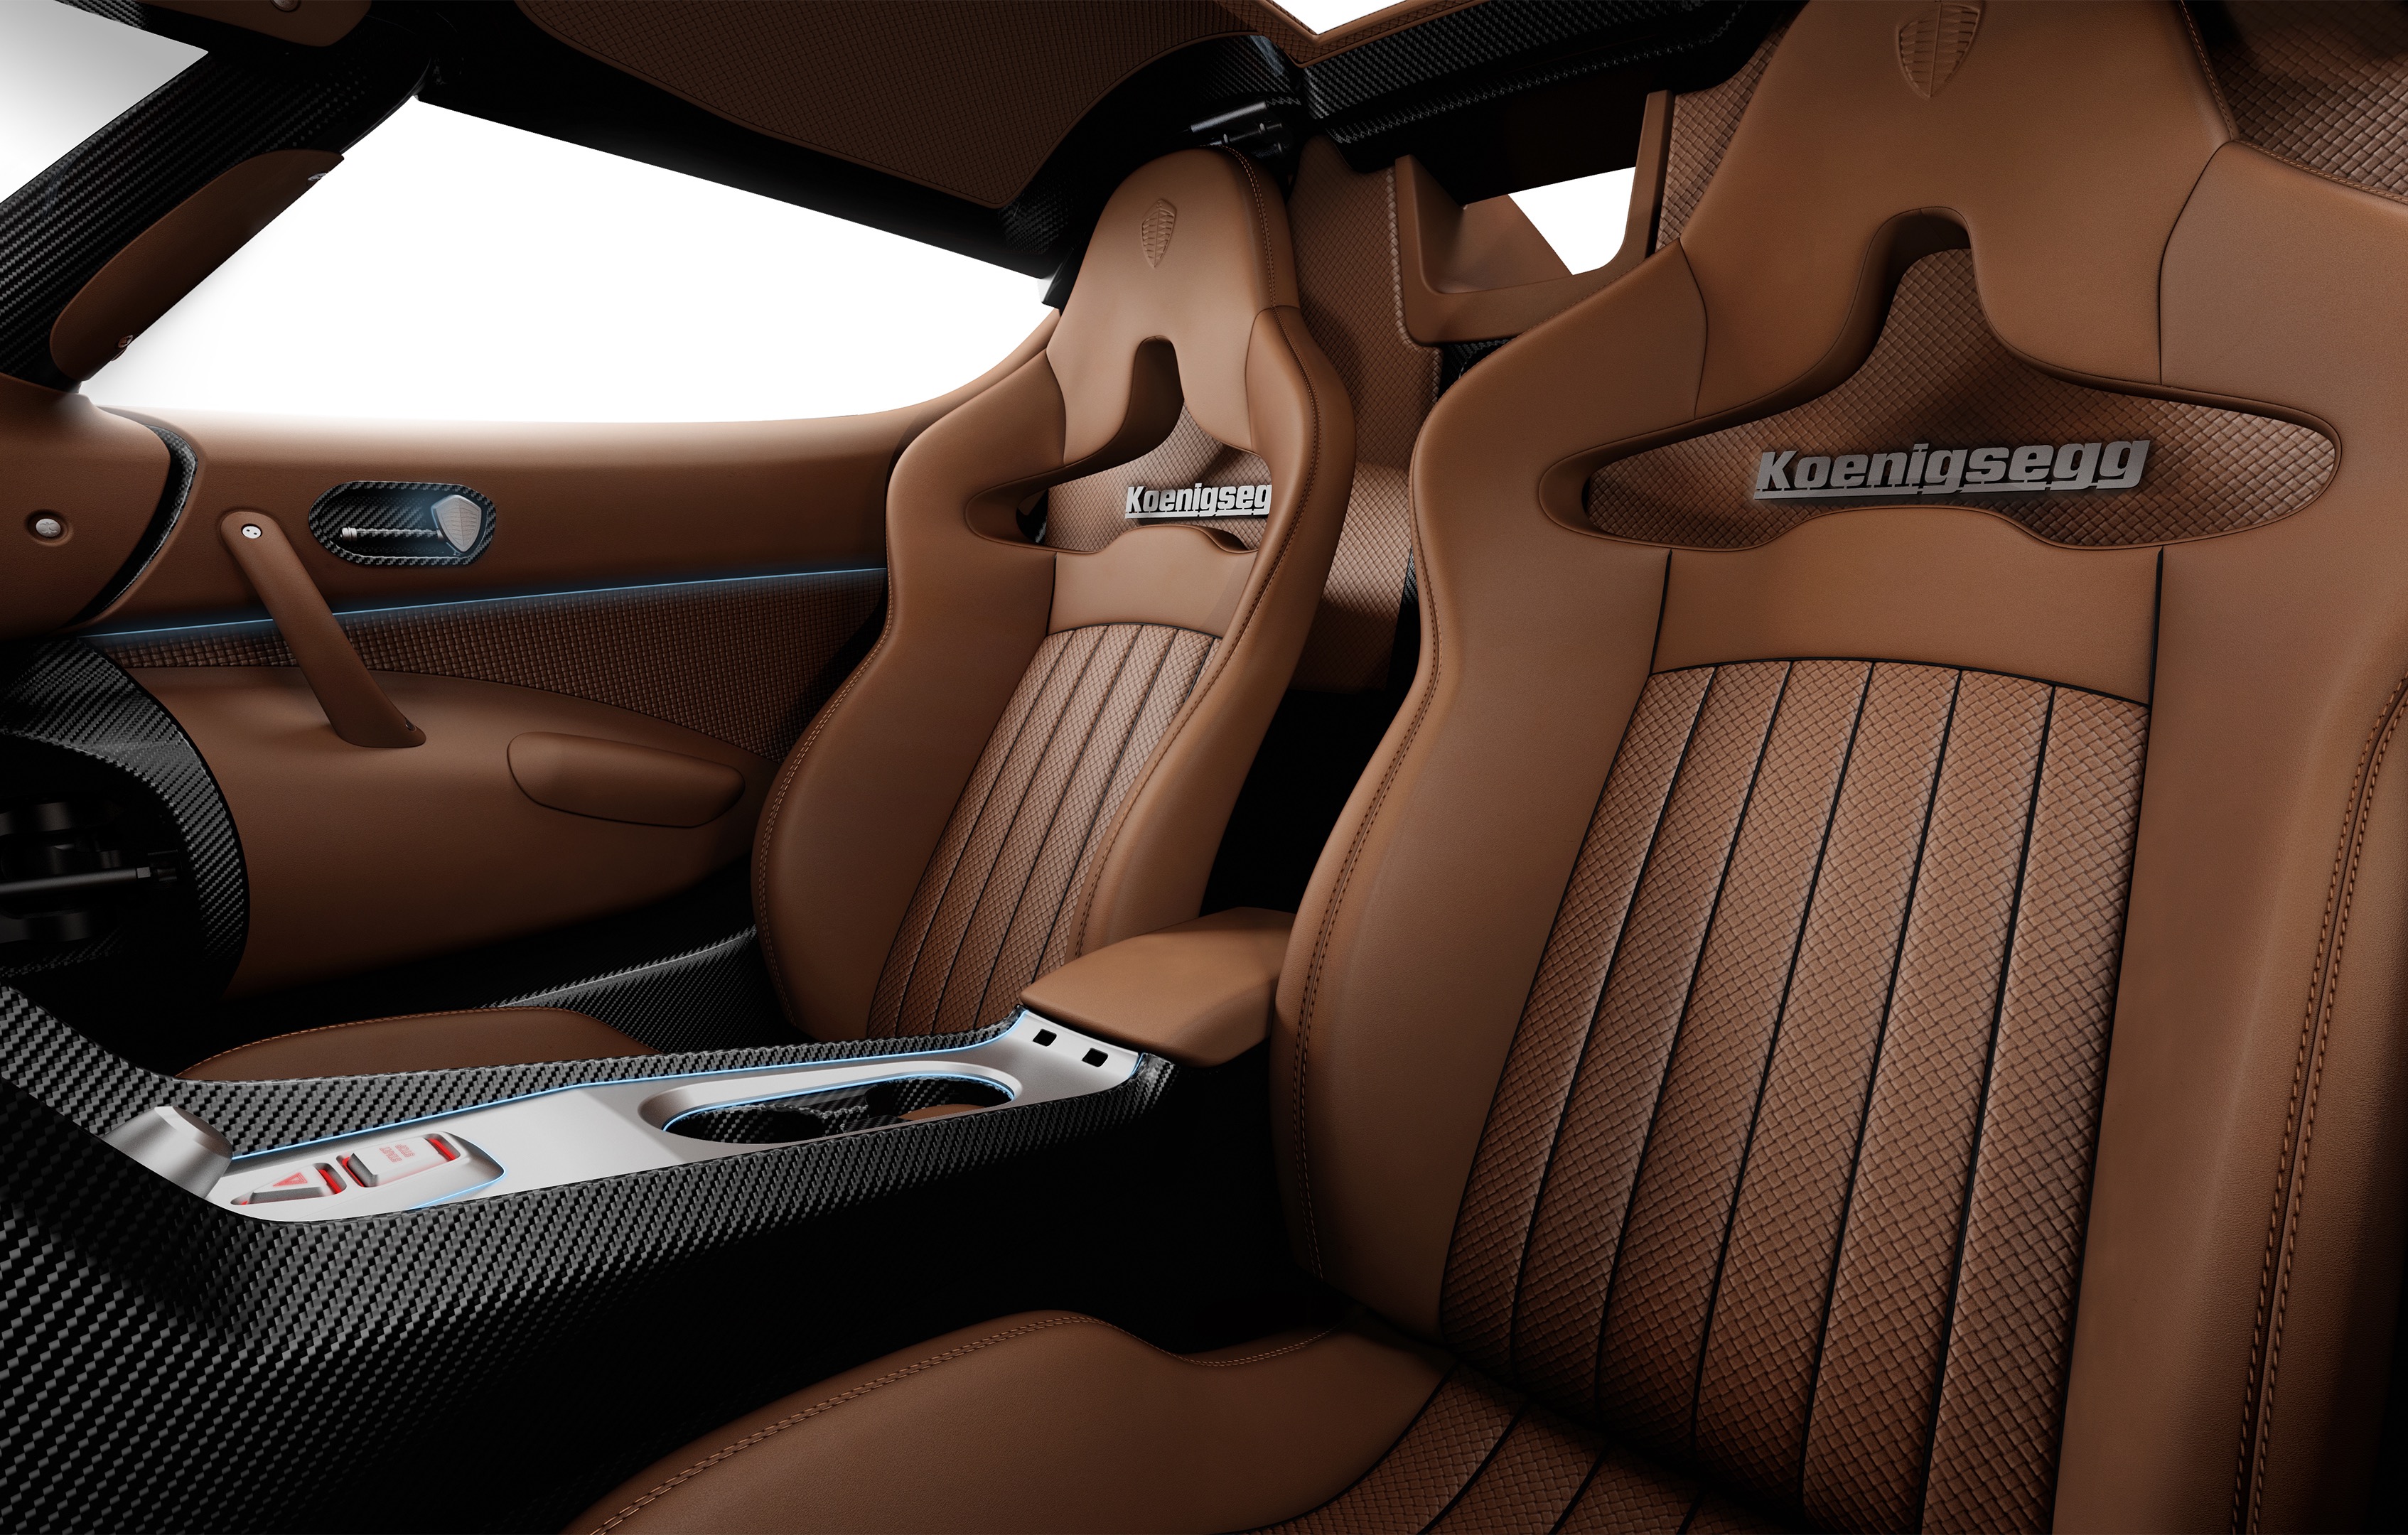 Koenigsegg_Regera_interior_seat